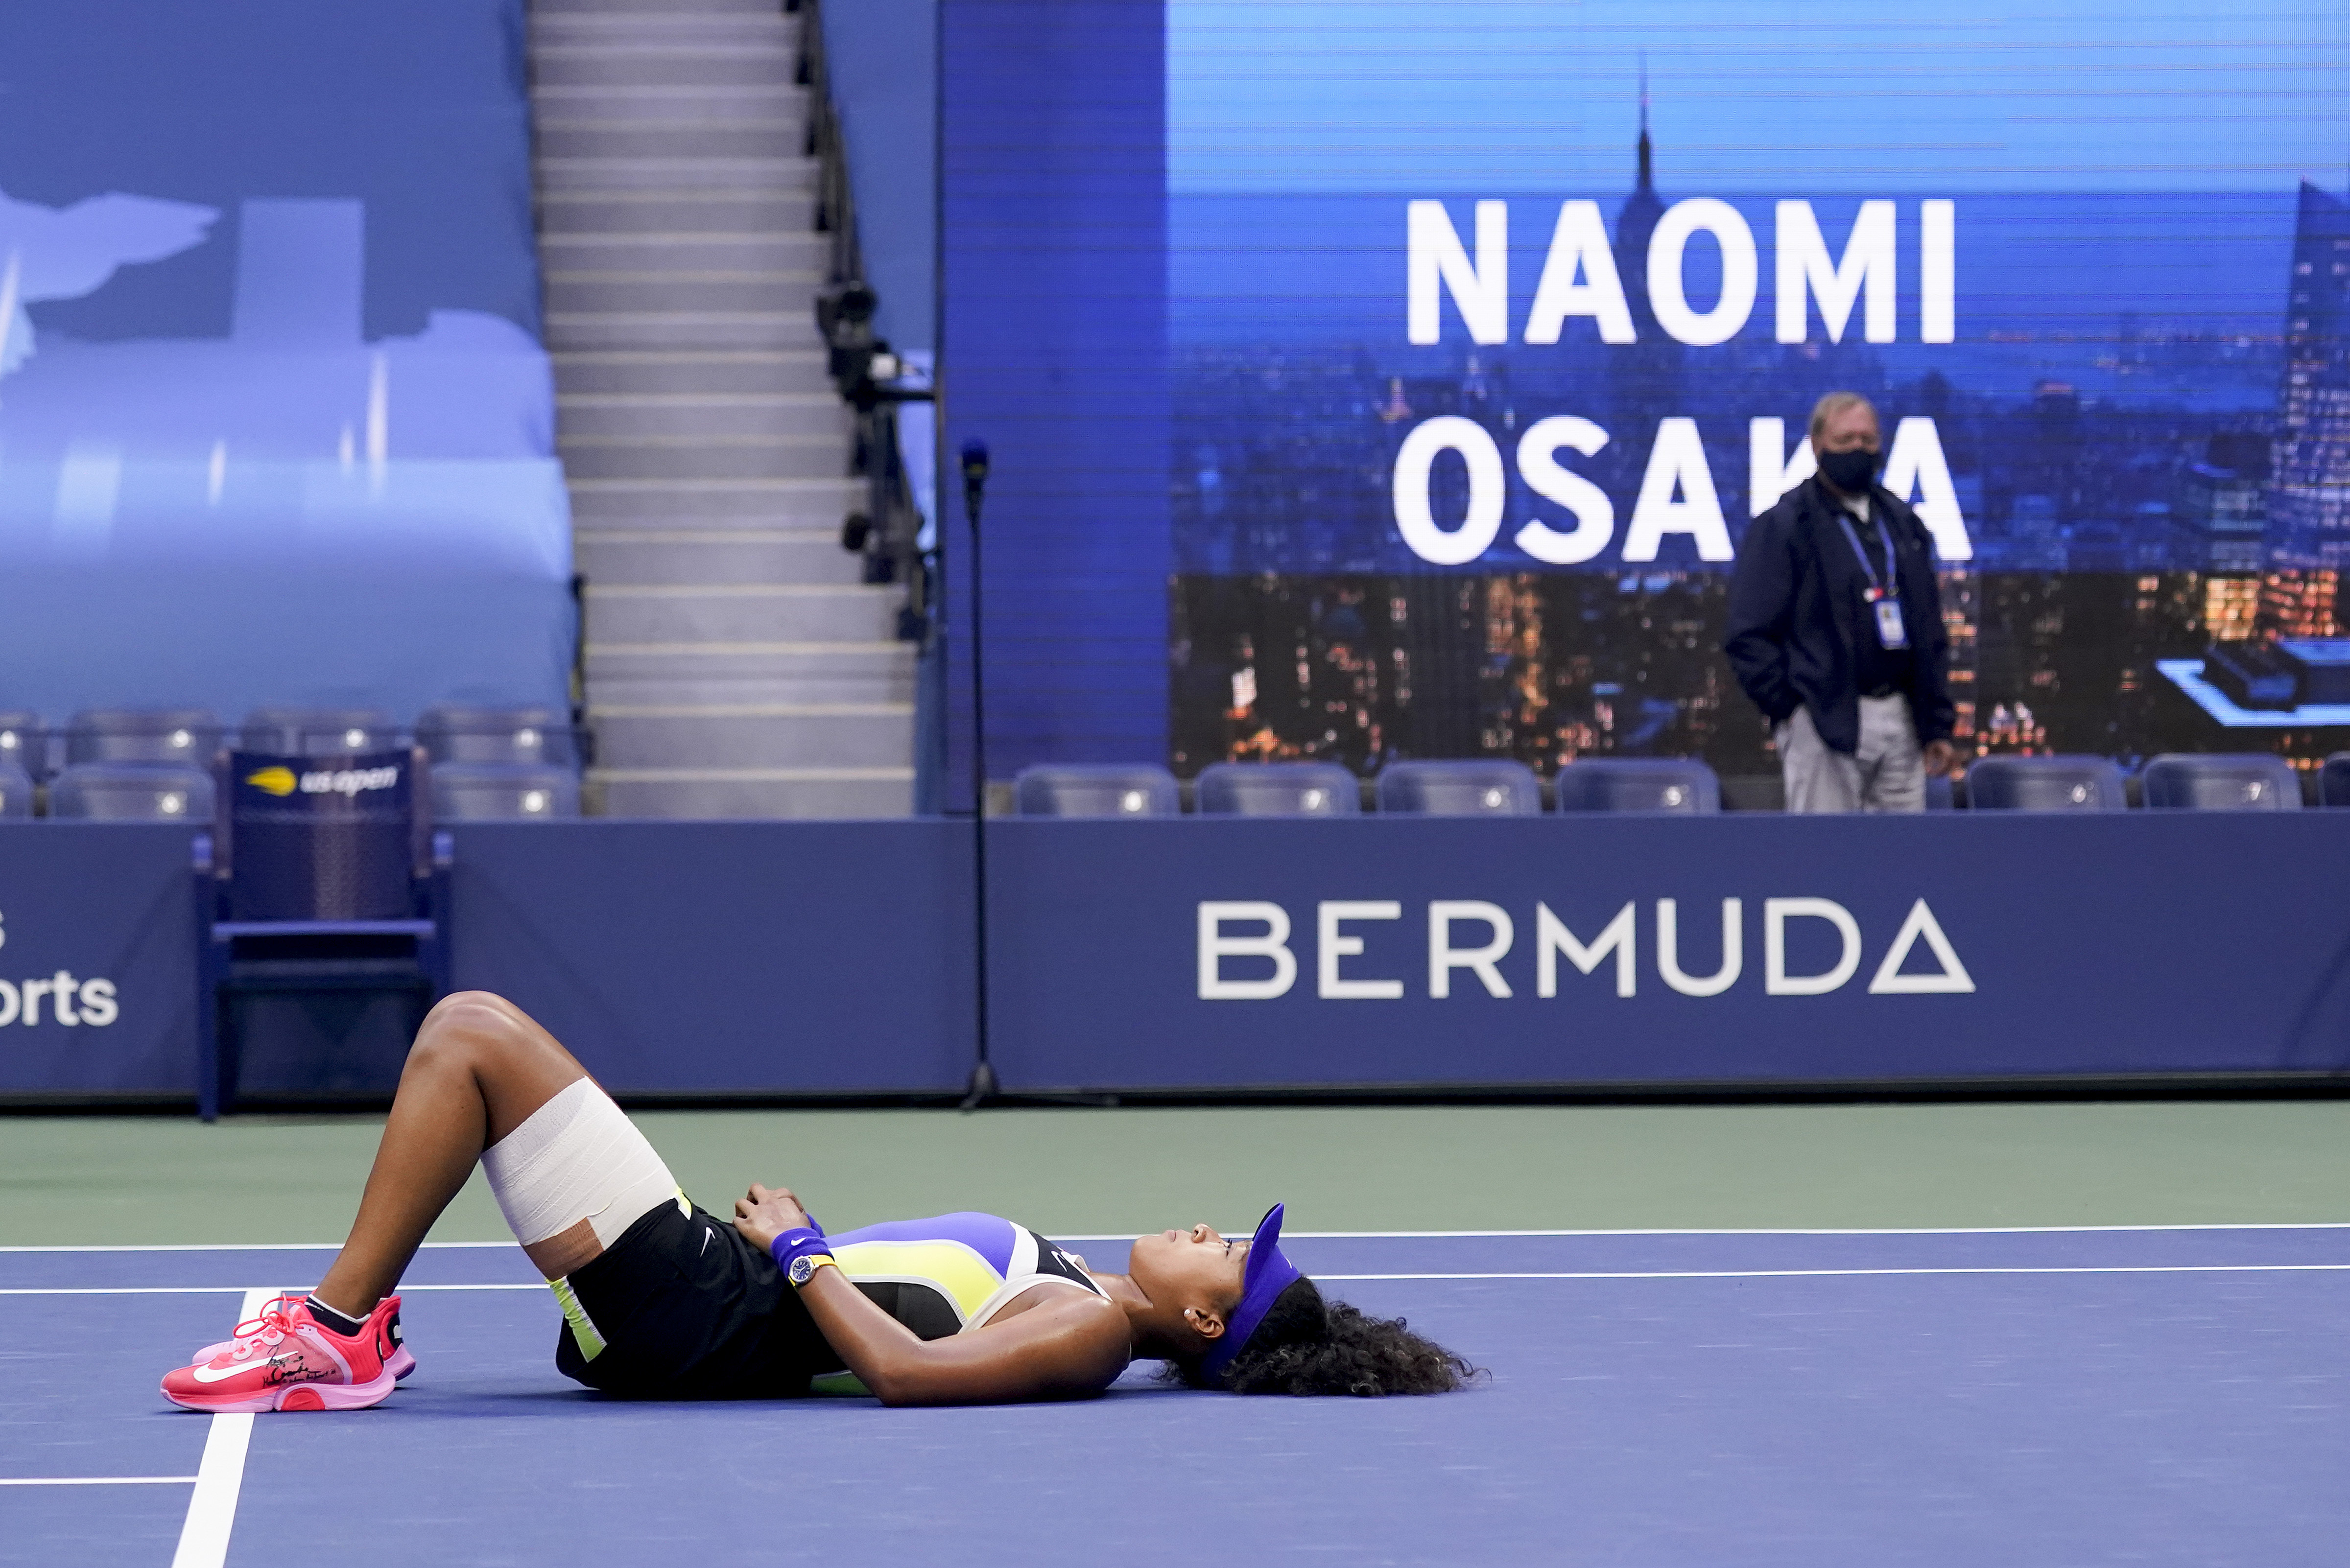 大坂直美夺冠后回到场地中央，躺在地上享受属于自己的冠军时刻。（美联社照片）

